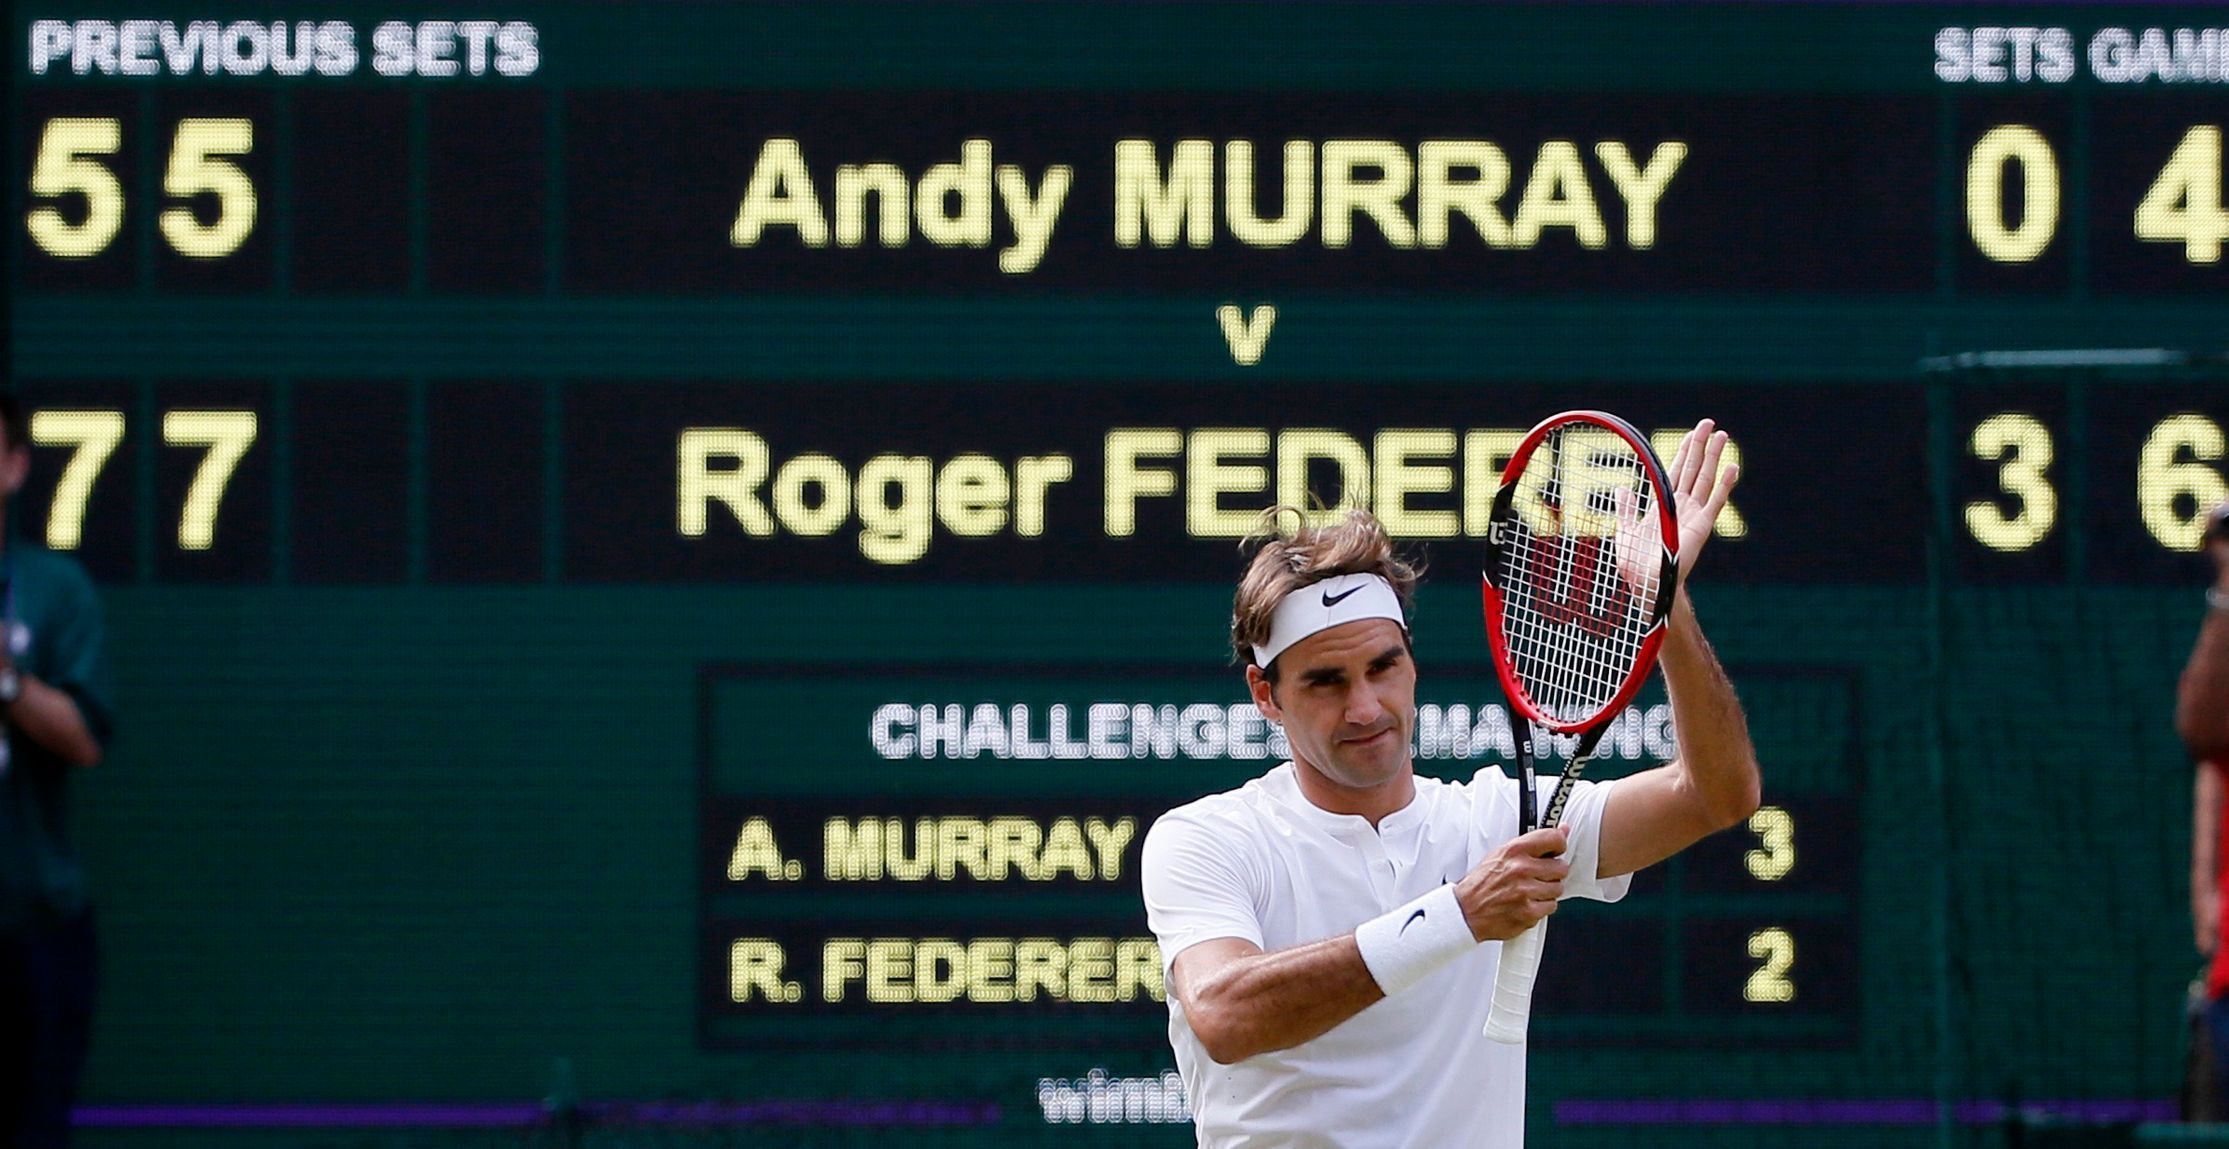 Roger Federer slaví postup přes Andyho Murrayho v semifinále Wimbledonu 2015